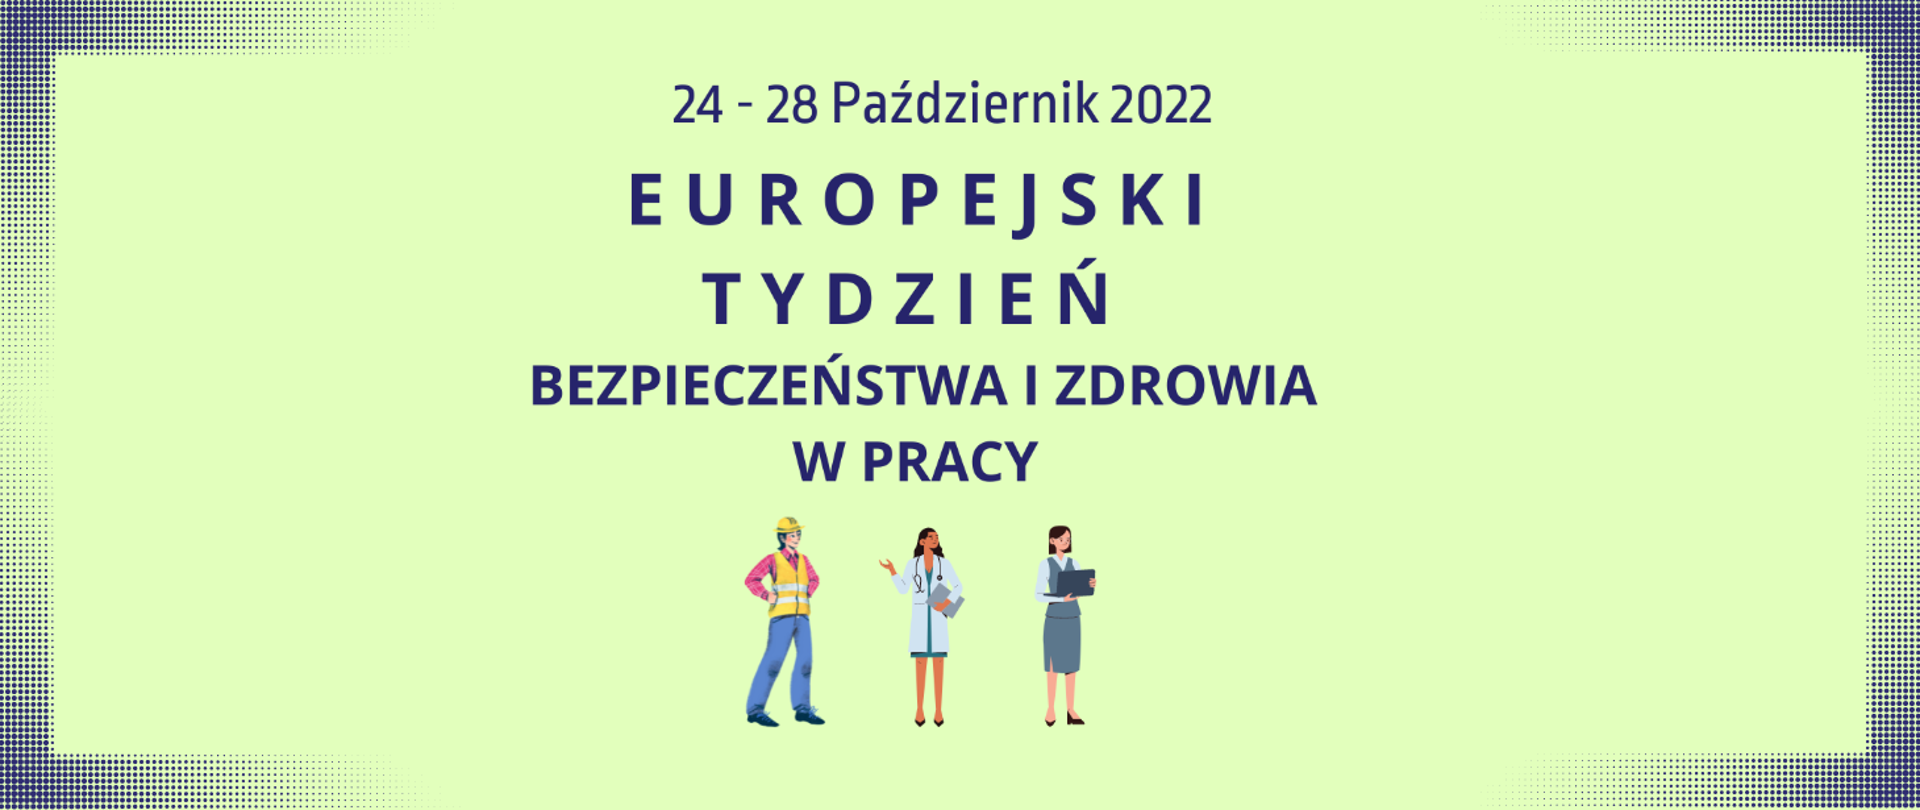 24 - 28 październik 2022 Europejski Tydzień Bezpieczeństwa i Zdrowia w Pracy